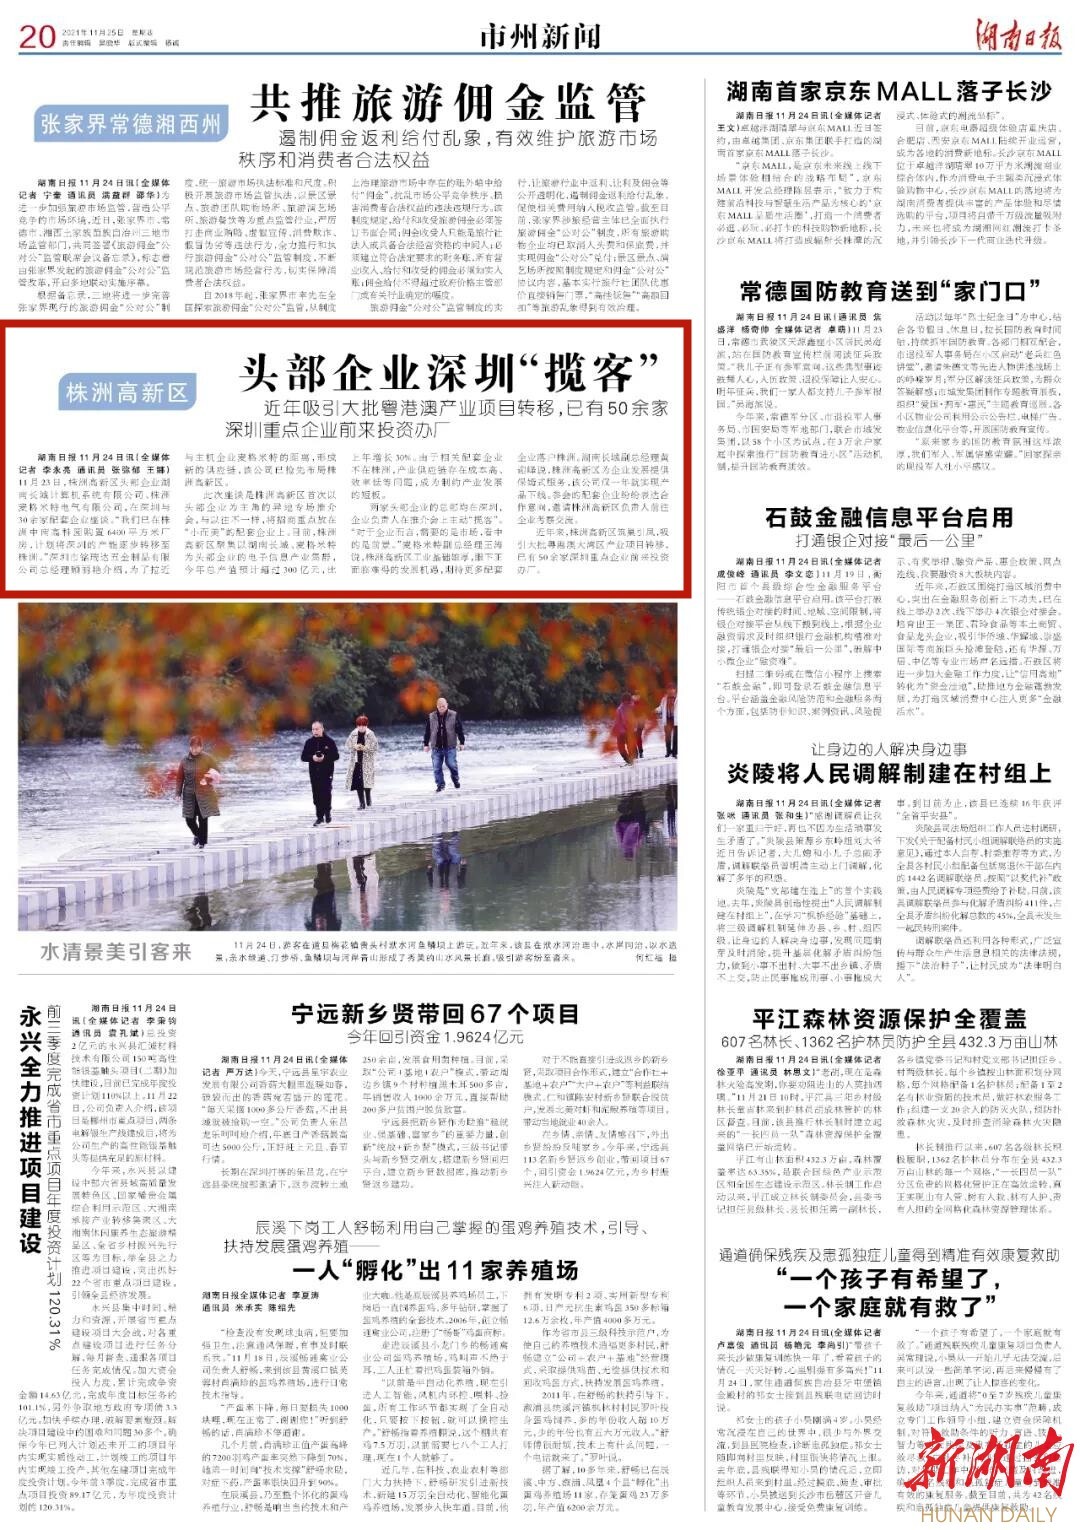 湖南日报市州头条 | 株洲高新区头部企业深圳“揽客”